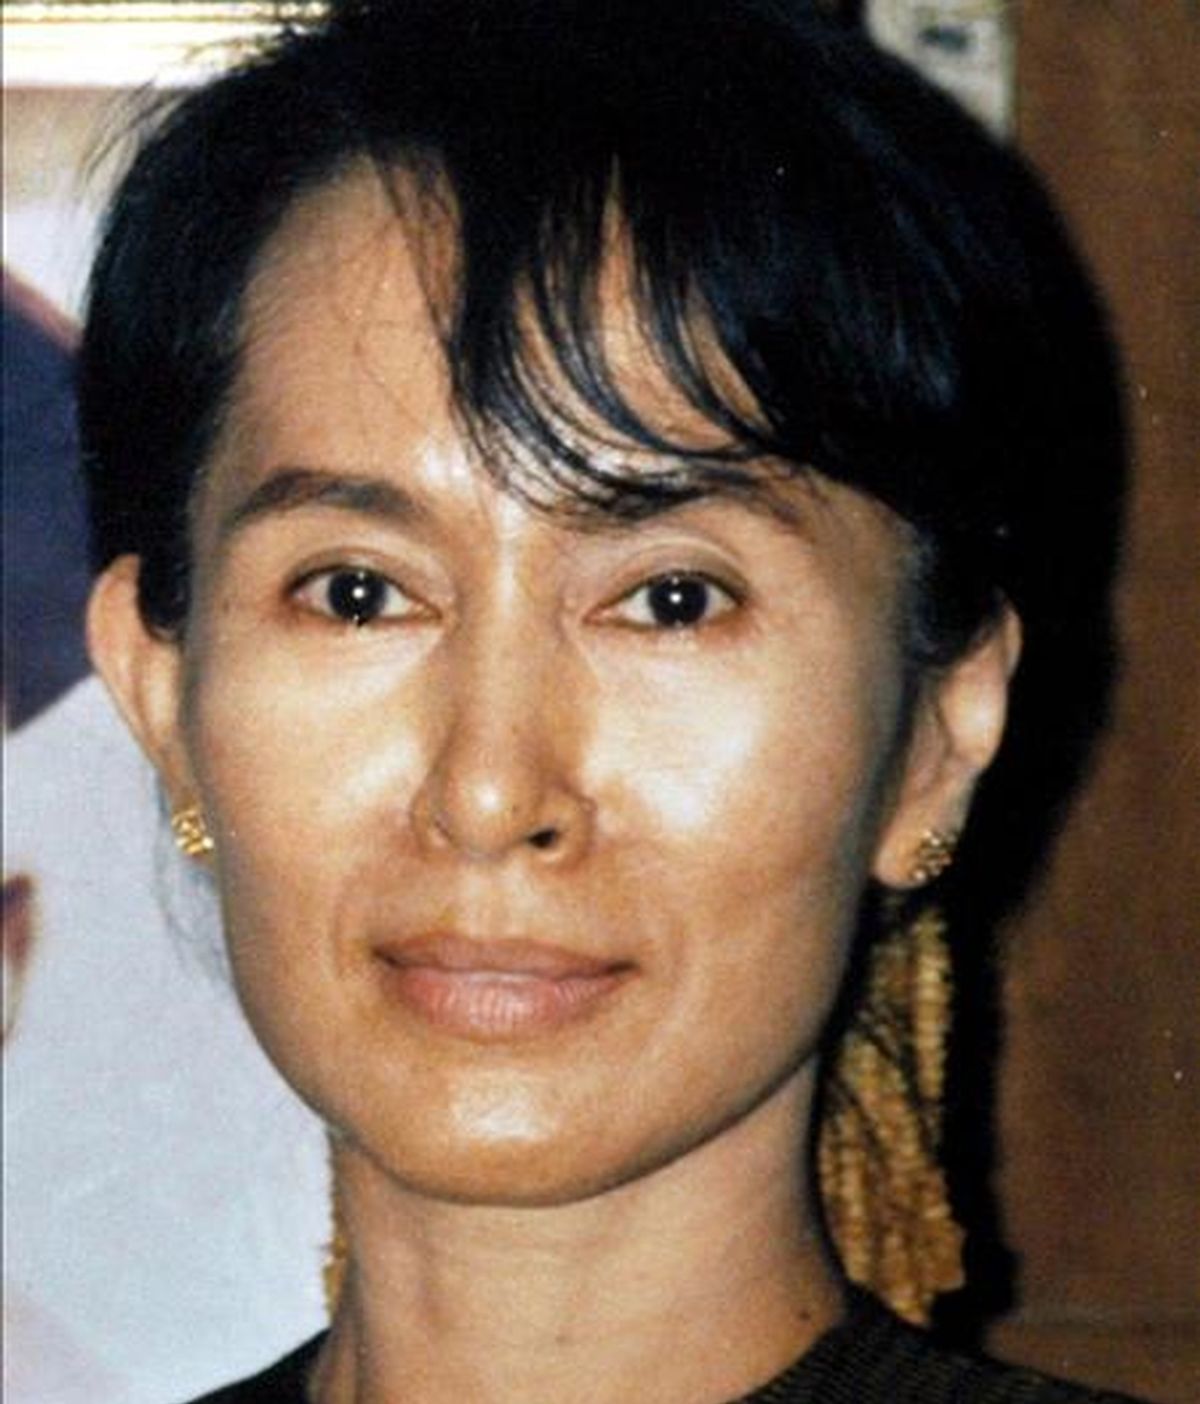 Fotograía de archivo de 2002 que muestra a la líder de la oposición birmana y Premio Nobel de la Paz en 1991, Aung San Suu Kyi. La opositora cumple 64 años hoy, 19 de junio. Desde el 14 de mayo permanece detenida, acusada de violar las condiciones del arresto domiciliario, una pena que ha sufrido más de 13 años en las últimas dos décadas por pedir de manera pacífica reformas democráticas. EFE